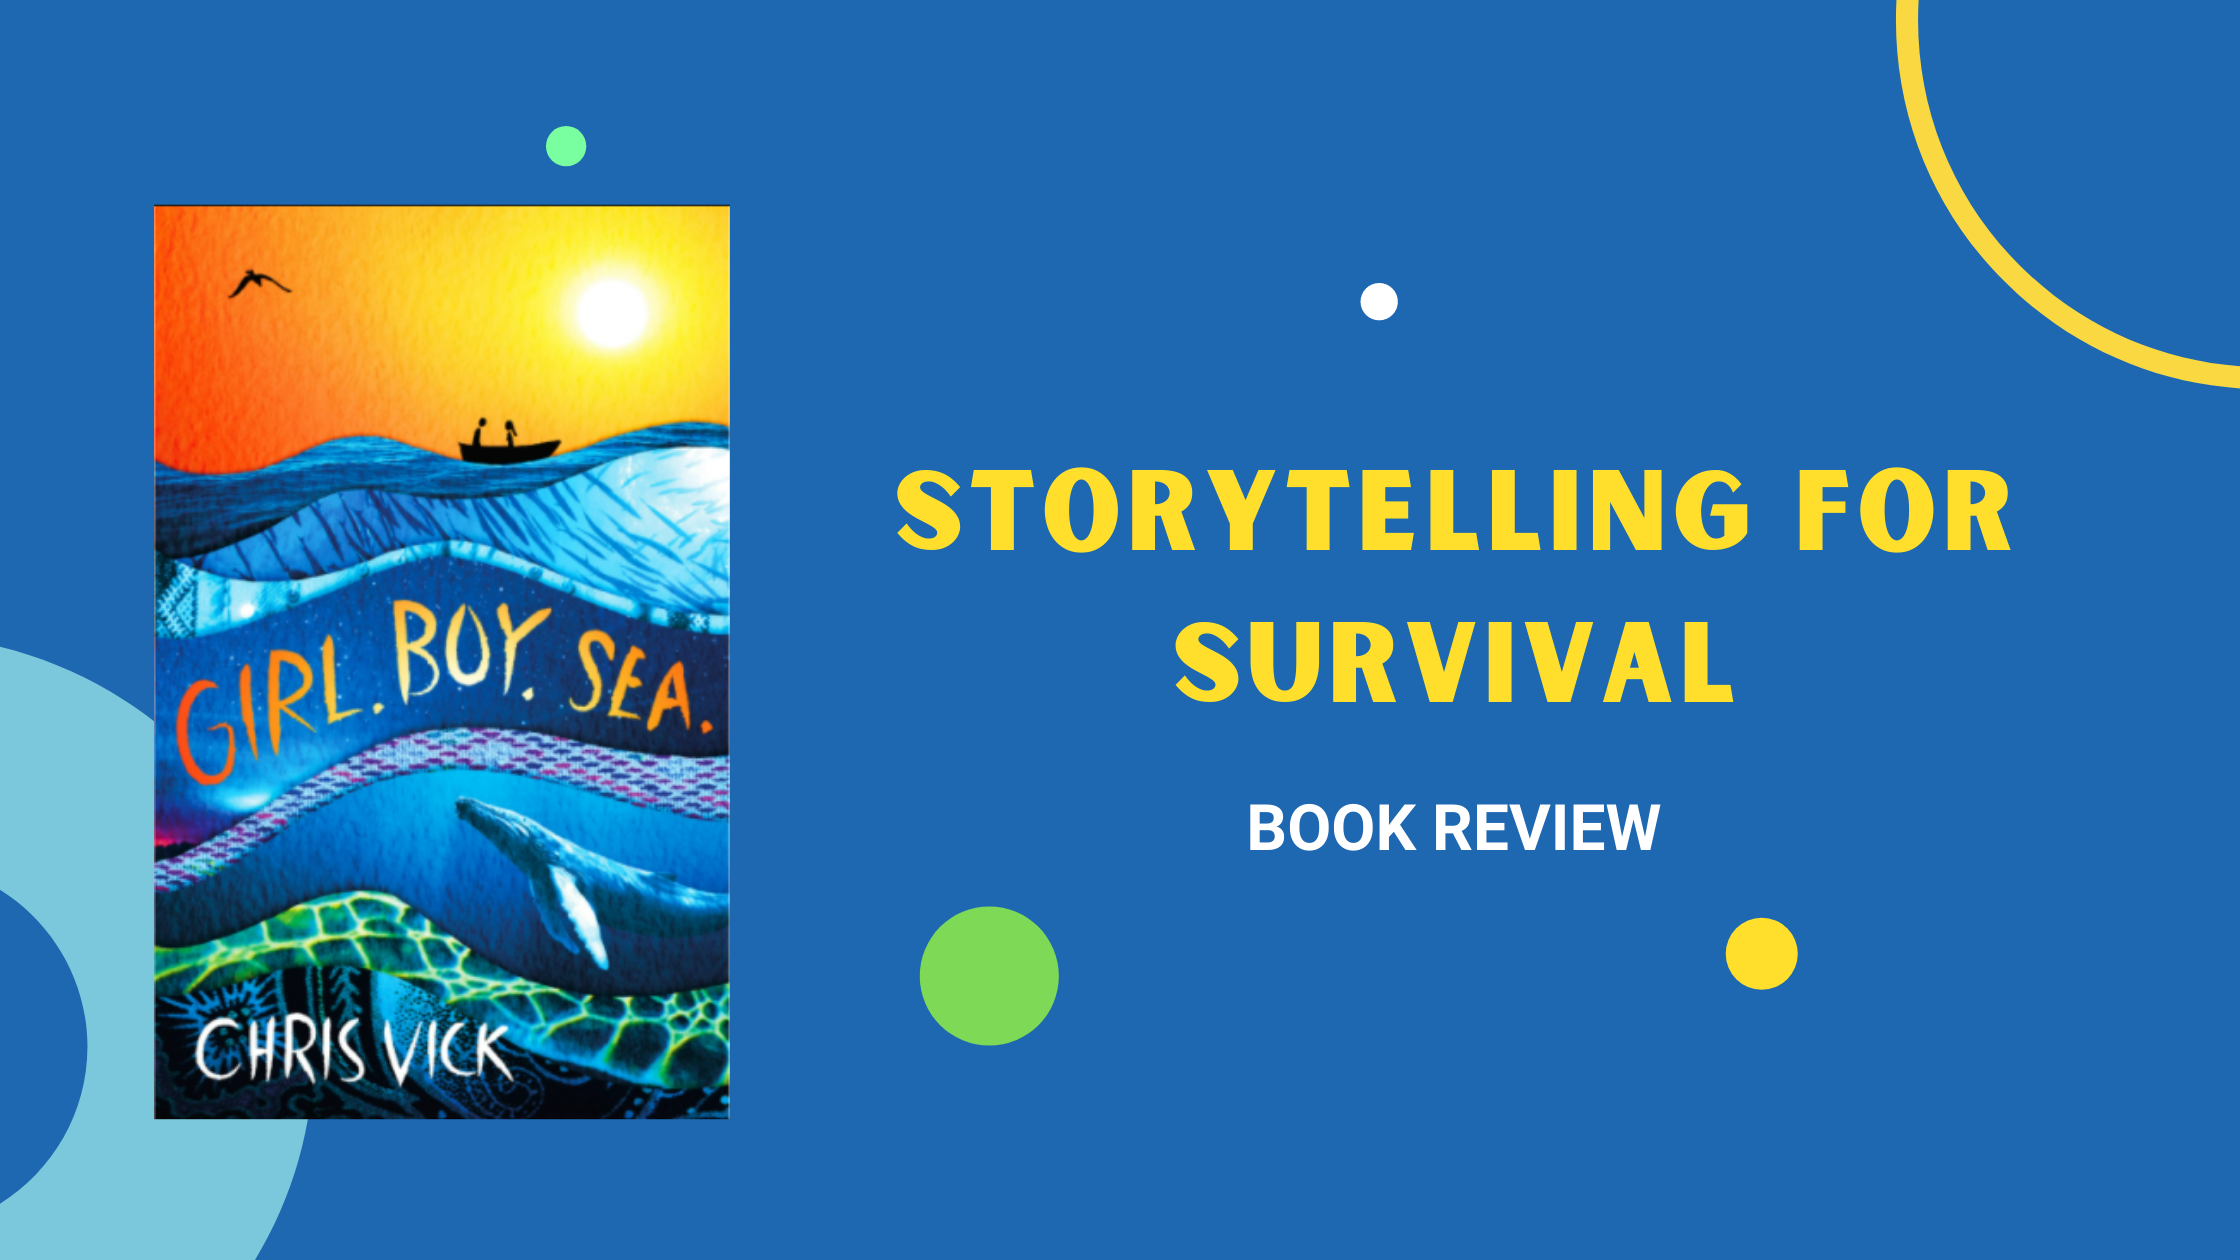 Girl, Boy, Sea - Book Review